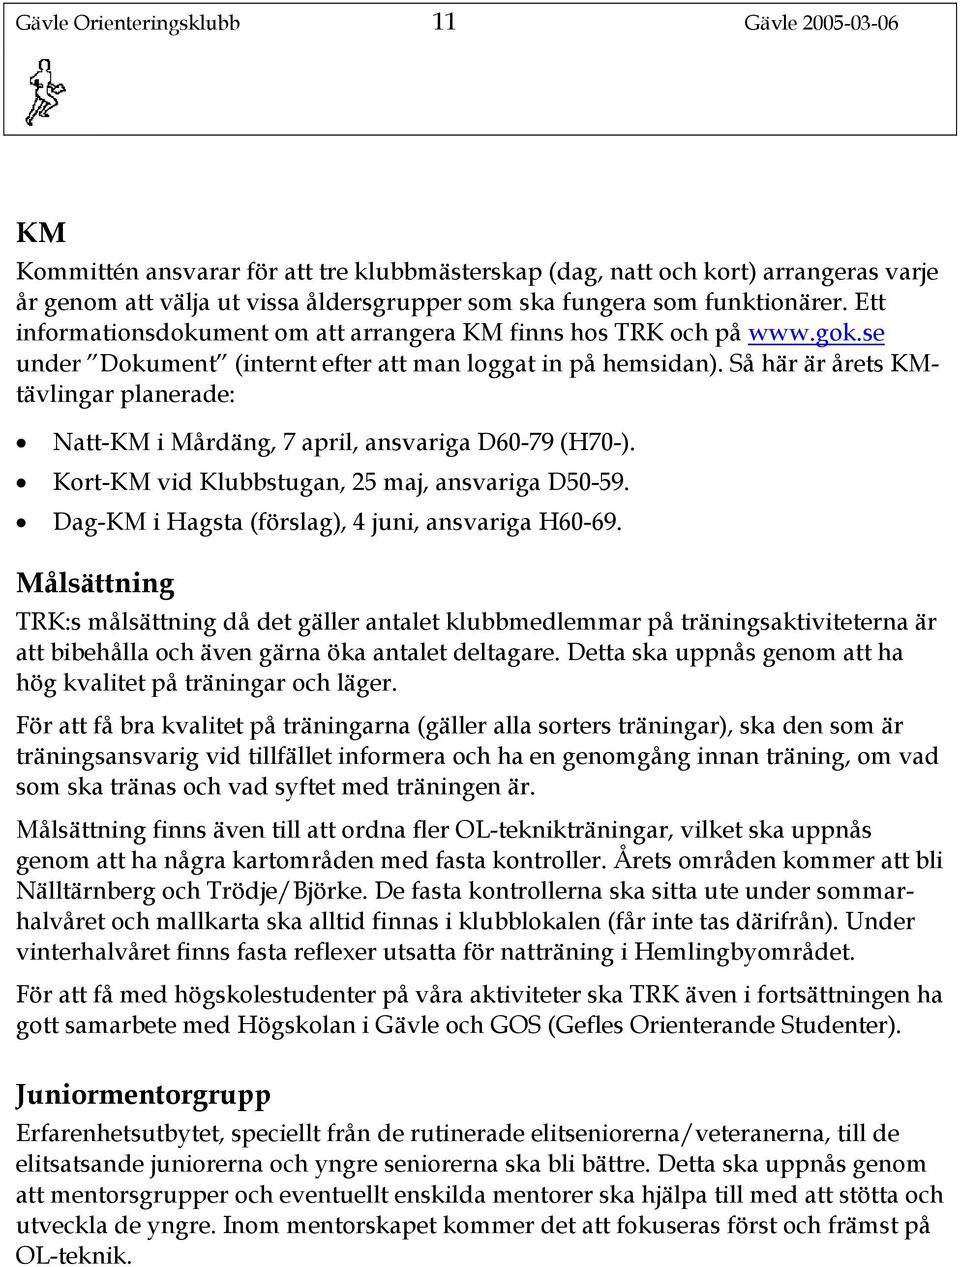 Så här är årets KMtävlingar planerade: Natt-KM i Mårdäng, 7 april, ansvariga D60-79 (H70-). Kort-KM vid Klubbstugan, 25 maj, ansvariga D50-59. Dag-KM i Hagsta (förslag), 4 juni, ansvariga H60-69.